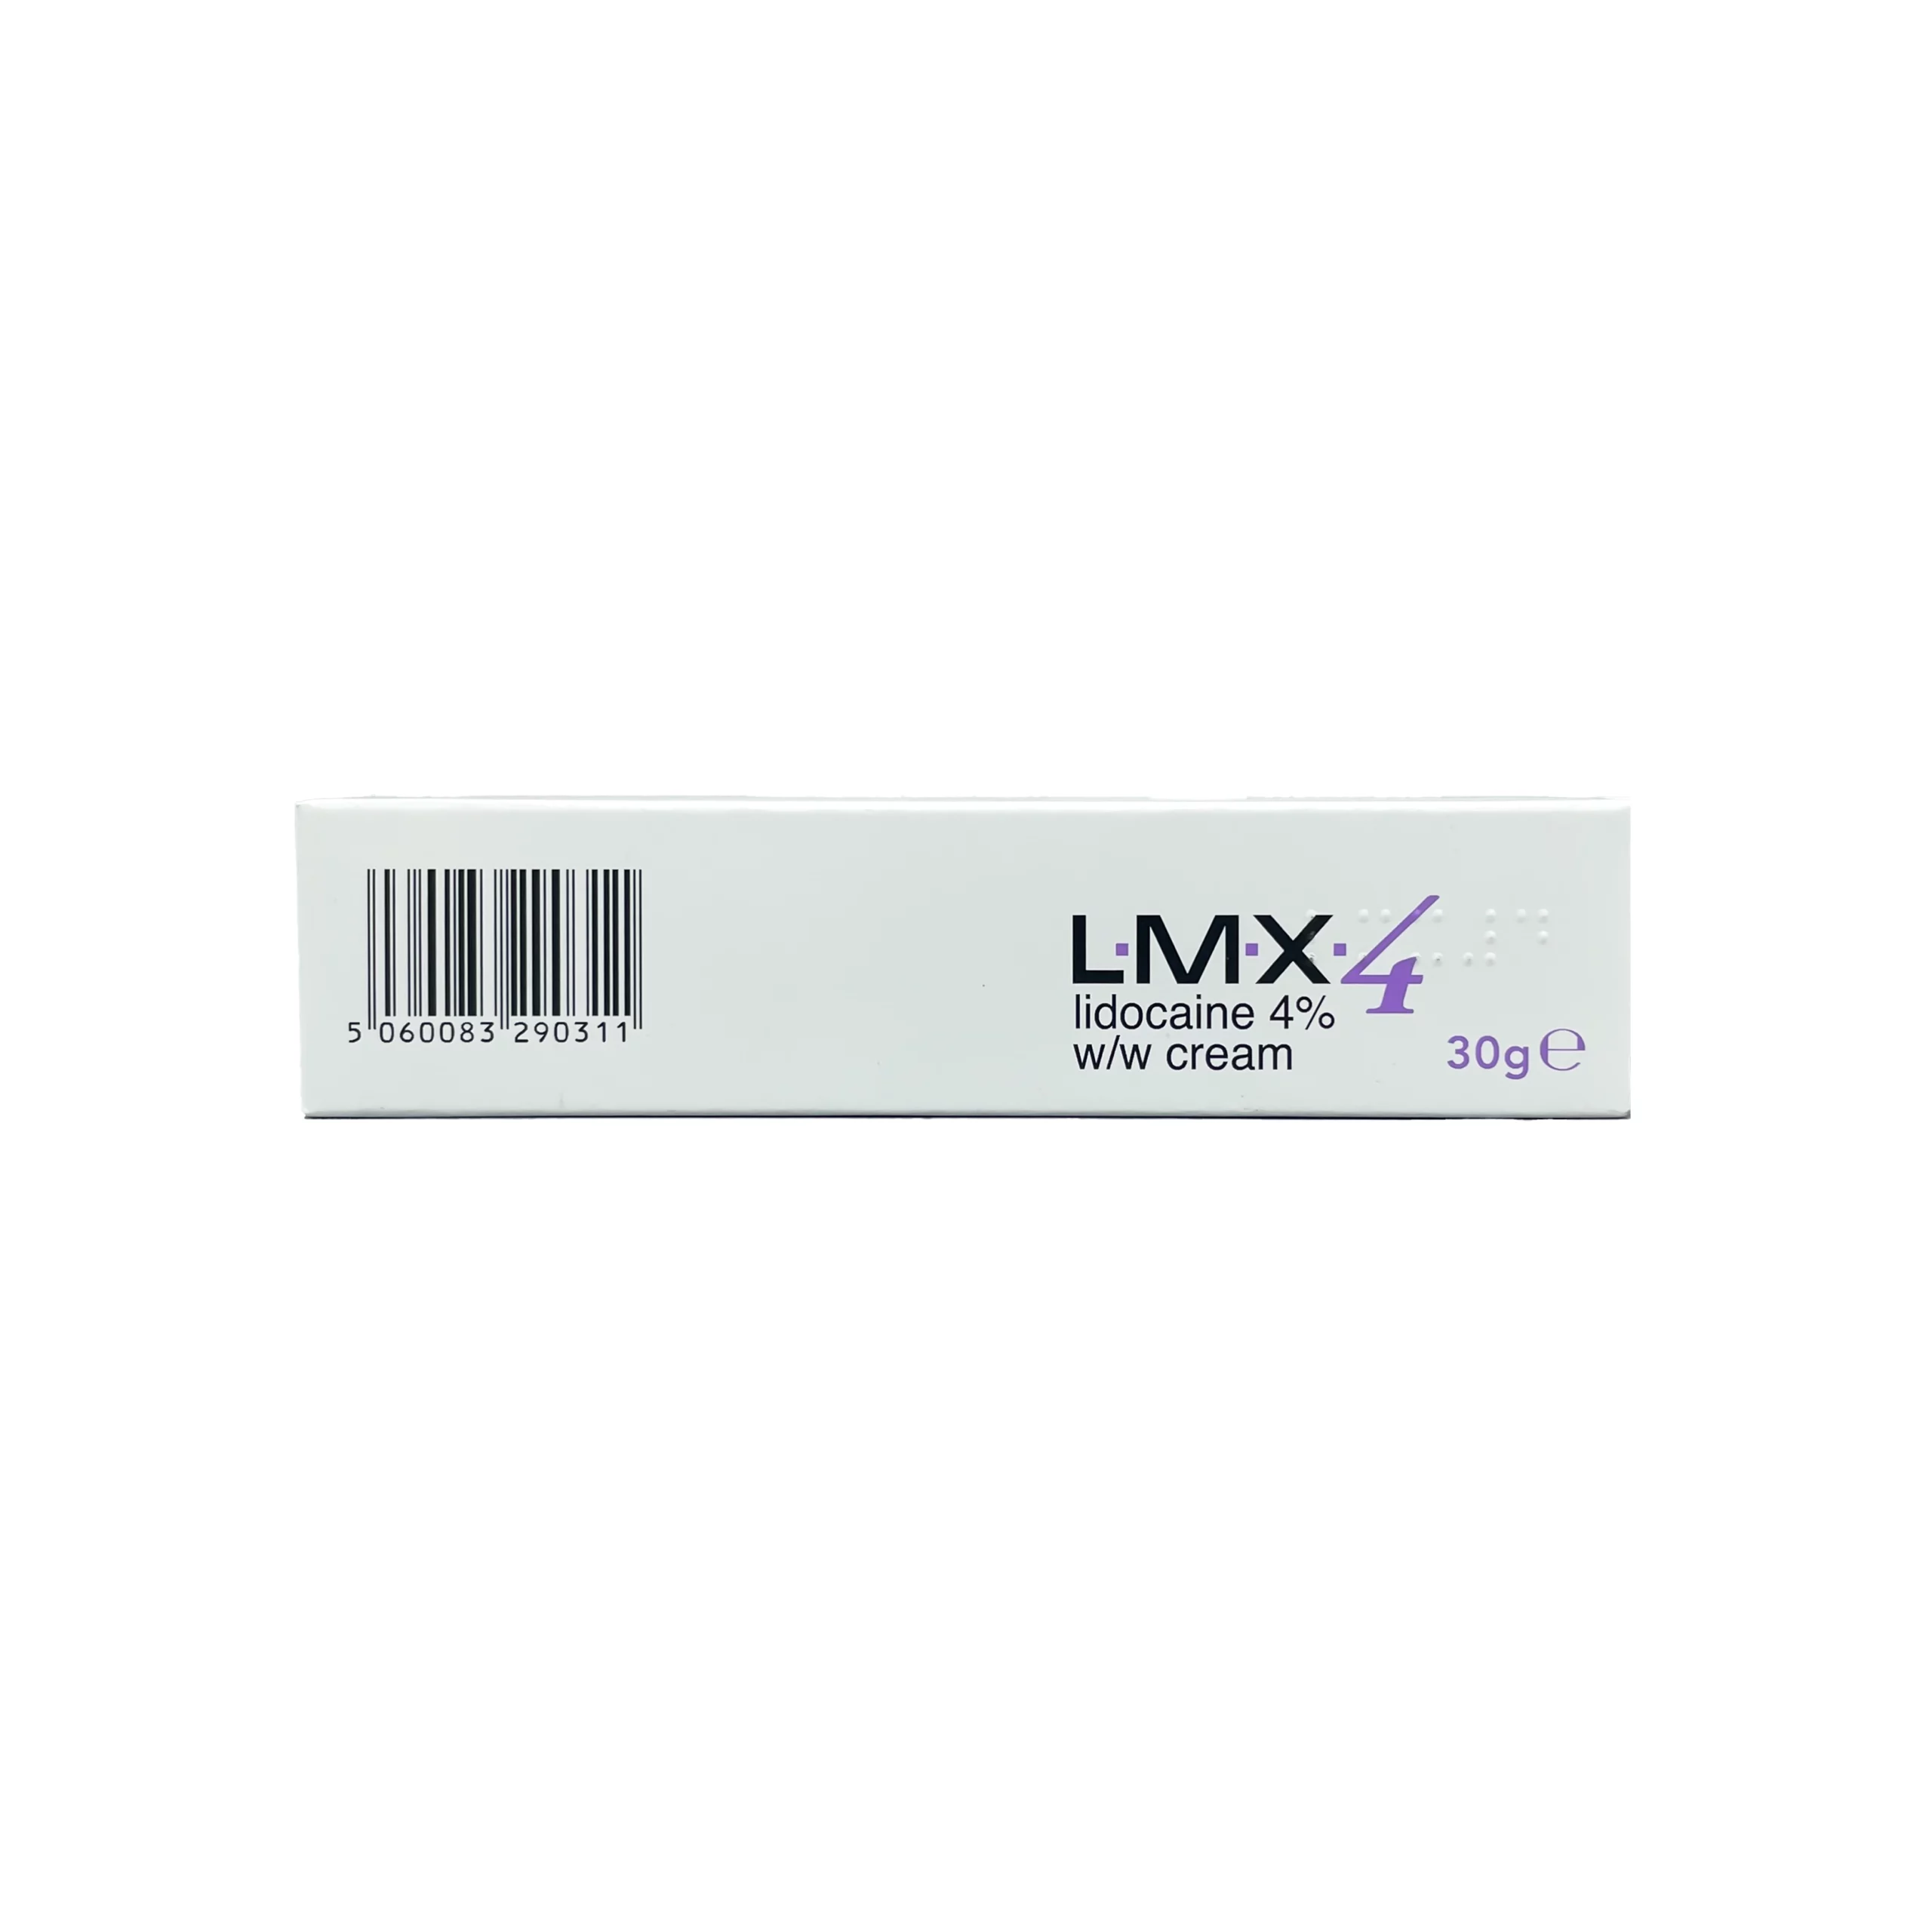 LMX4 Cream 30g